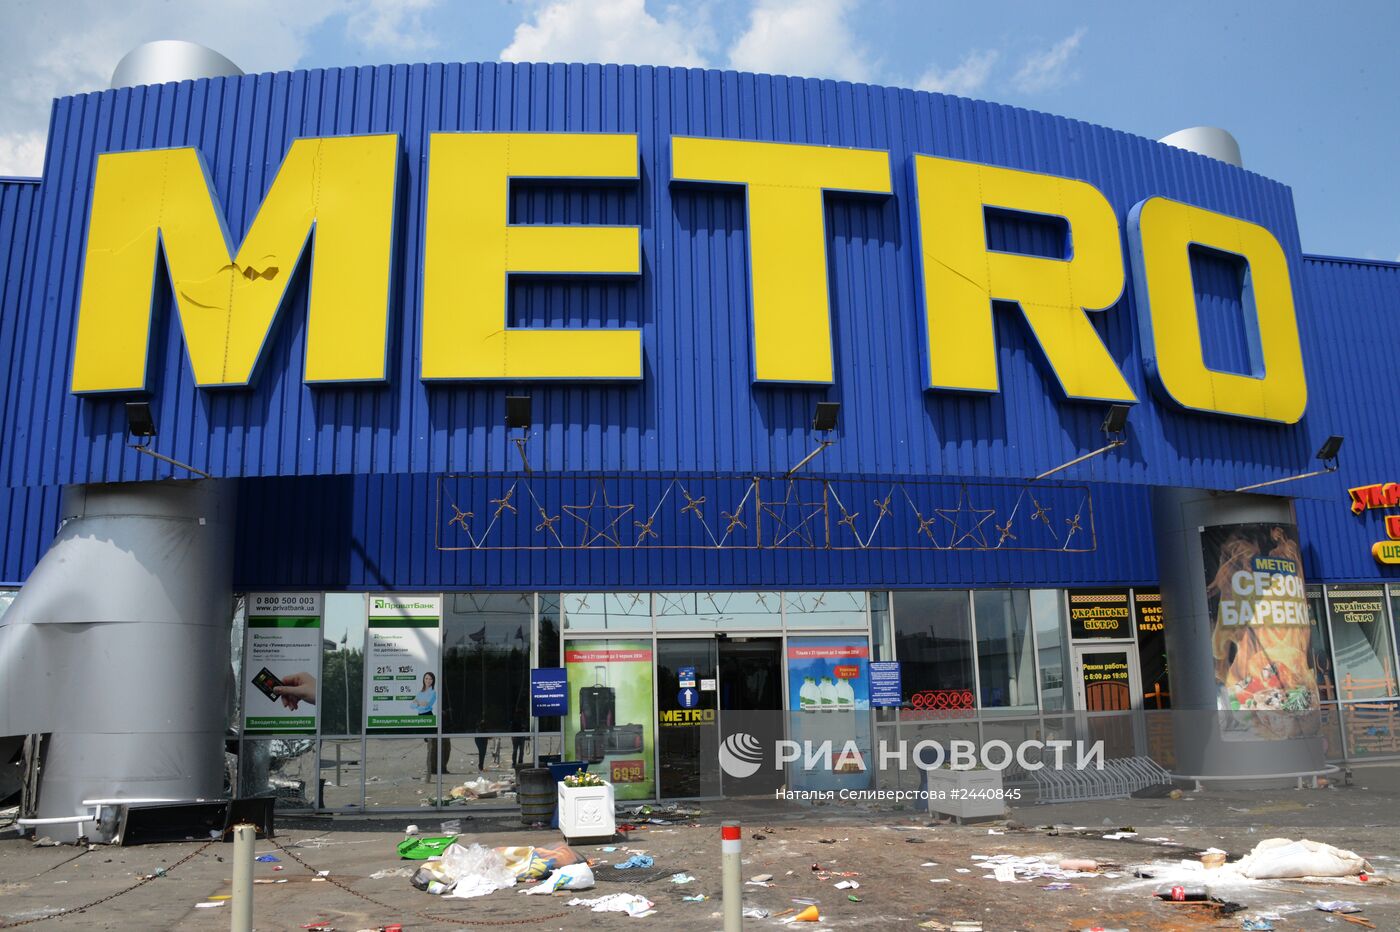 Гипермаркет Metro, разграбленный мародерами